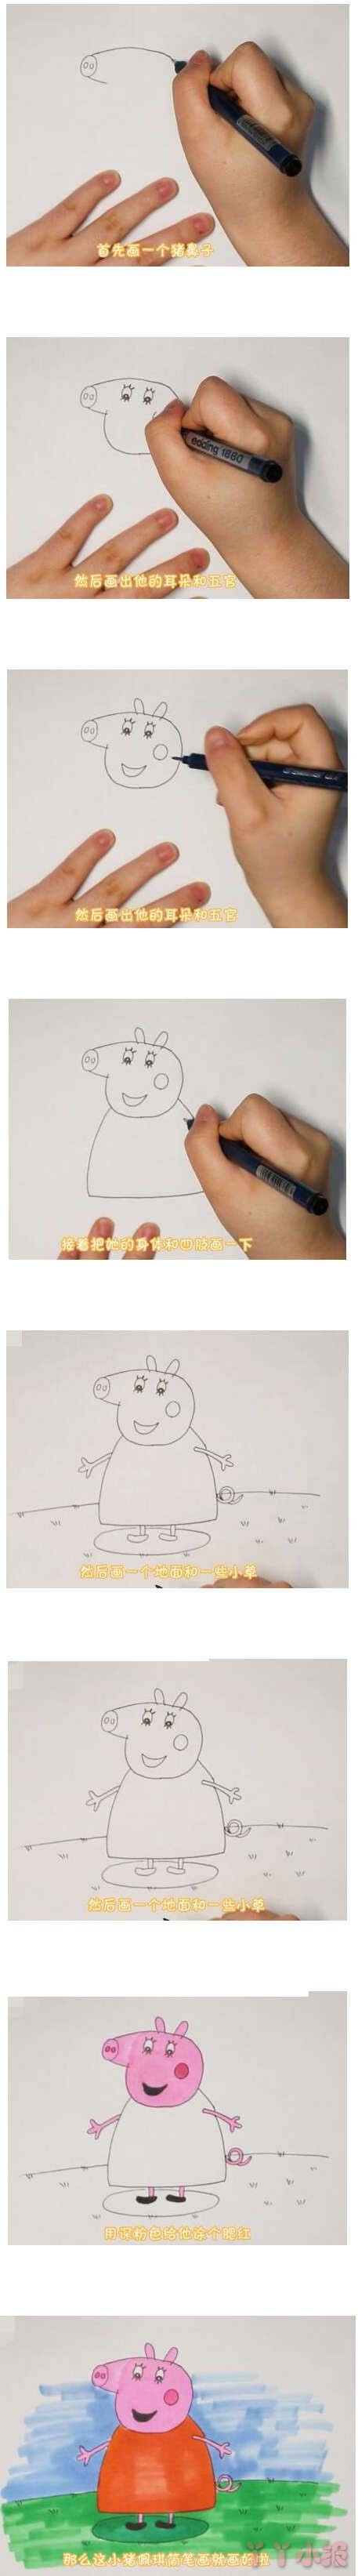 教你一步一步绘画小猪佩奇简笔画教程涂色简单